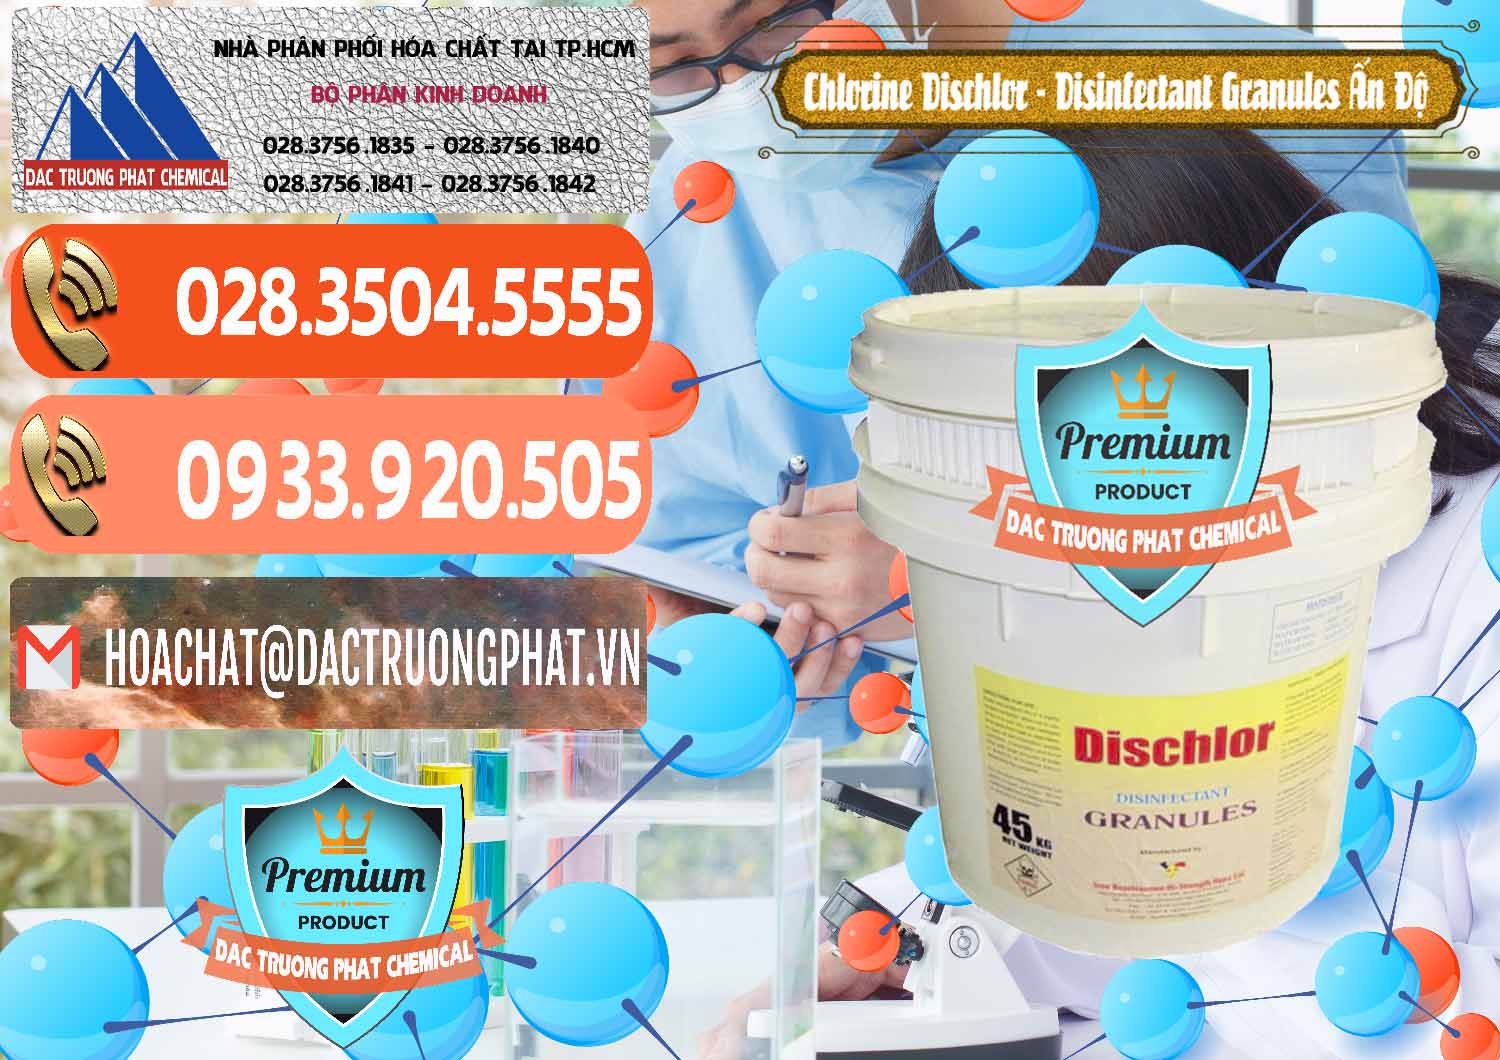 Cty chuyên bán & phân phối Chlorine – Clorin 70% Dischlor - Disinfectant Granules Ấn Độ India - 0248 - Đơn vị chuyên kinh doanh - phân phối hóa chất tại TP.HCM - hoachatmientay.com